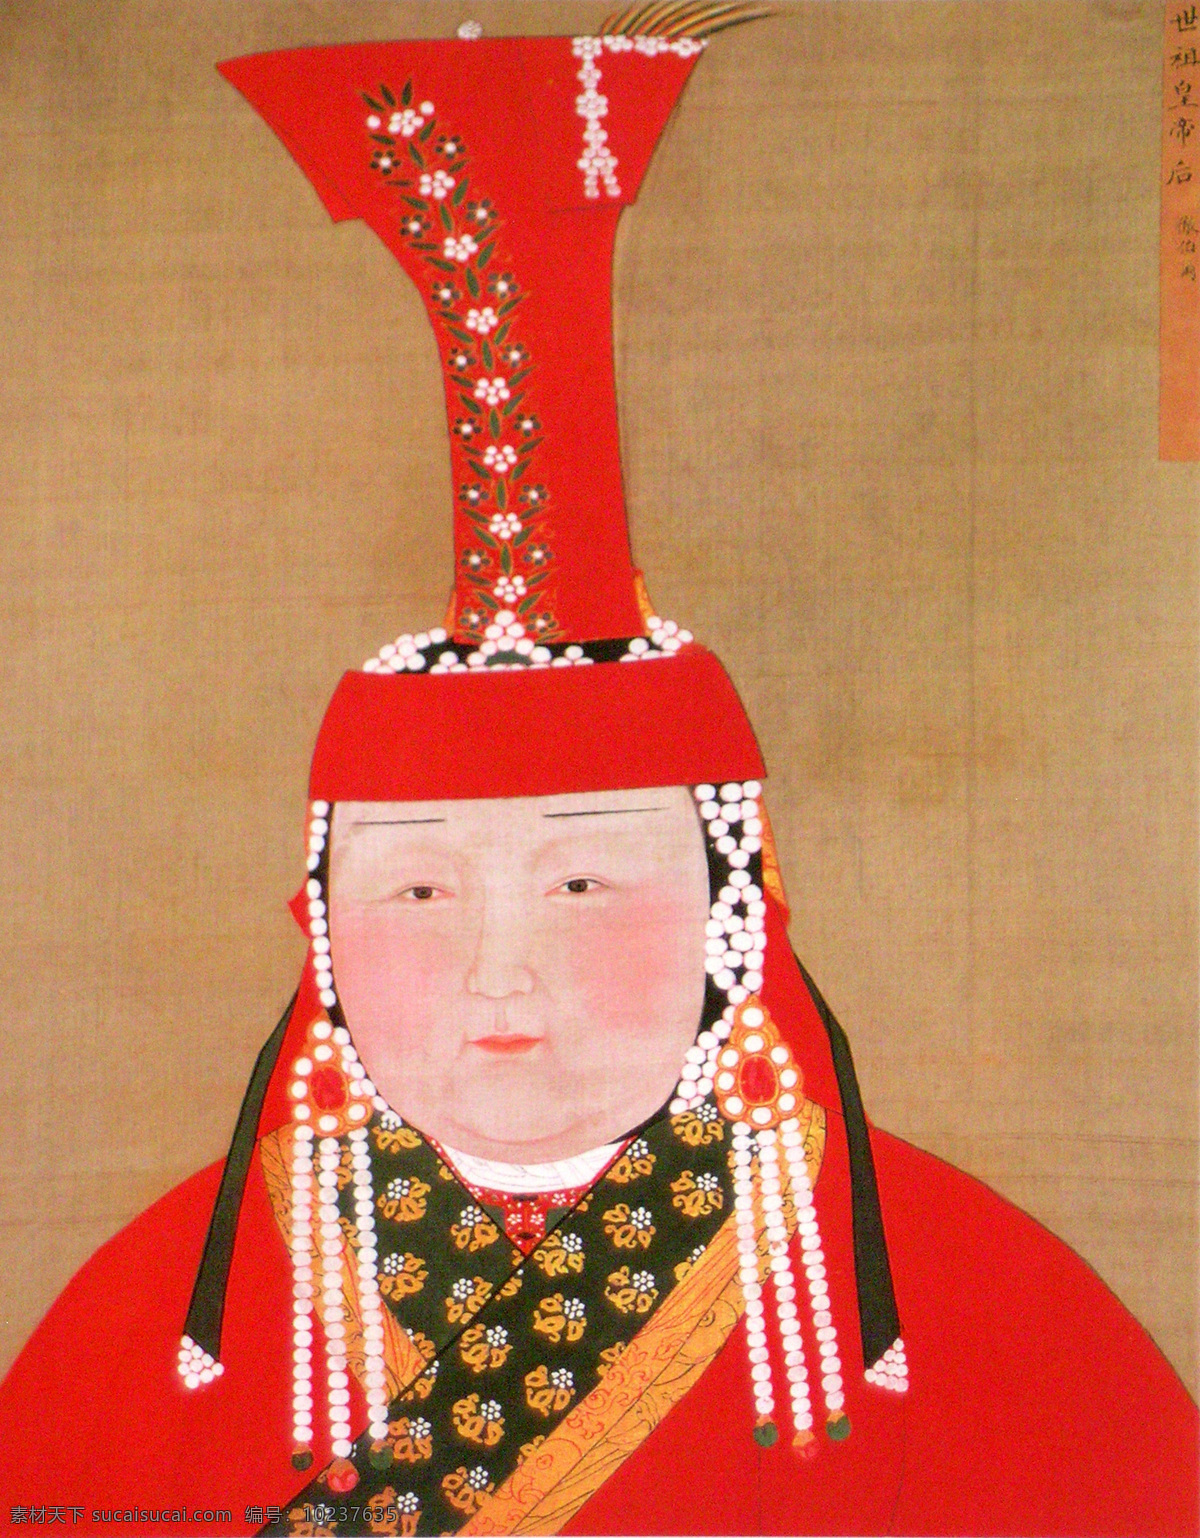 元世祖 皇后 画像 设计素材 人物名画 古典藏画 书画美术 红色